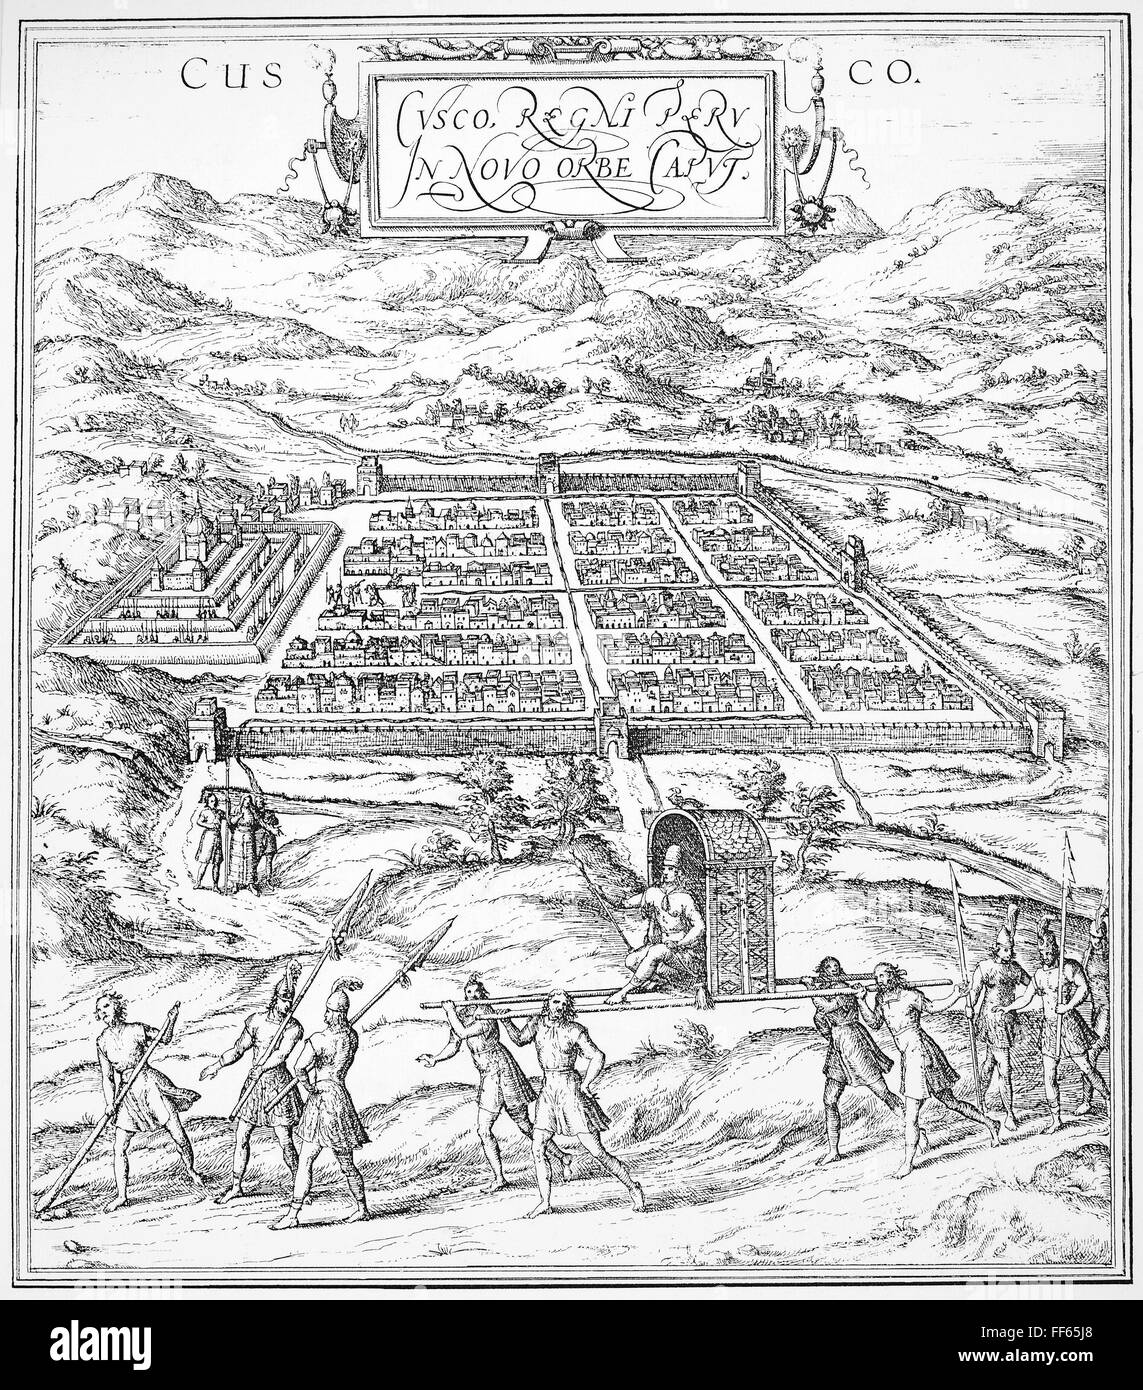 Pérou : CUSCO, 1572. /Nla ville de Cuzco, Pérou. Gravure allemande, 1572. Banque D'Images